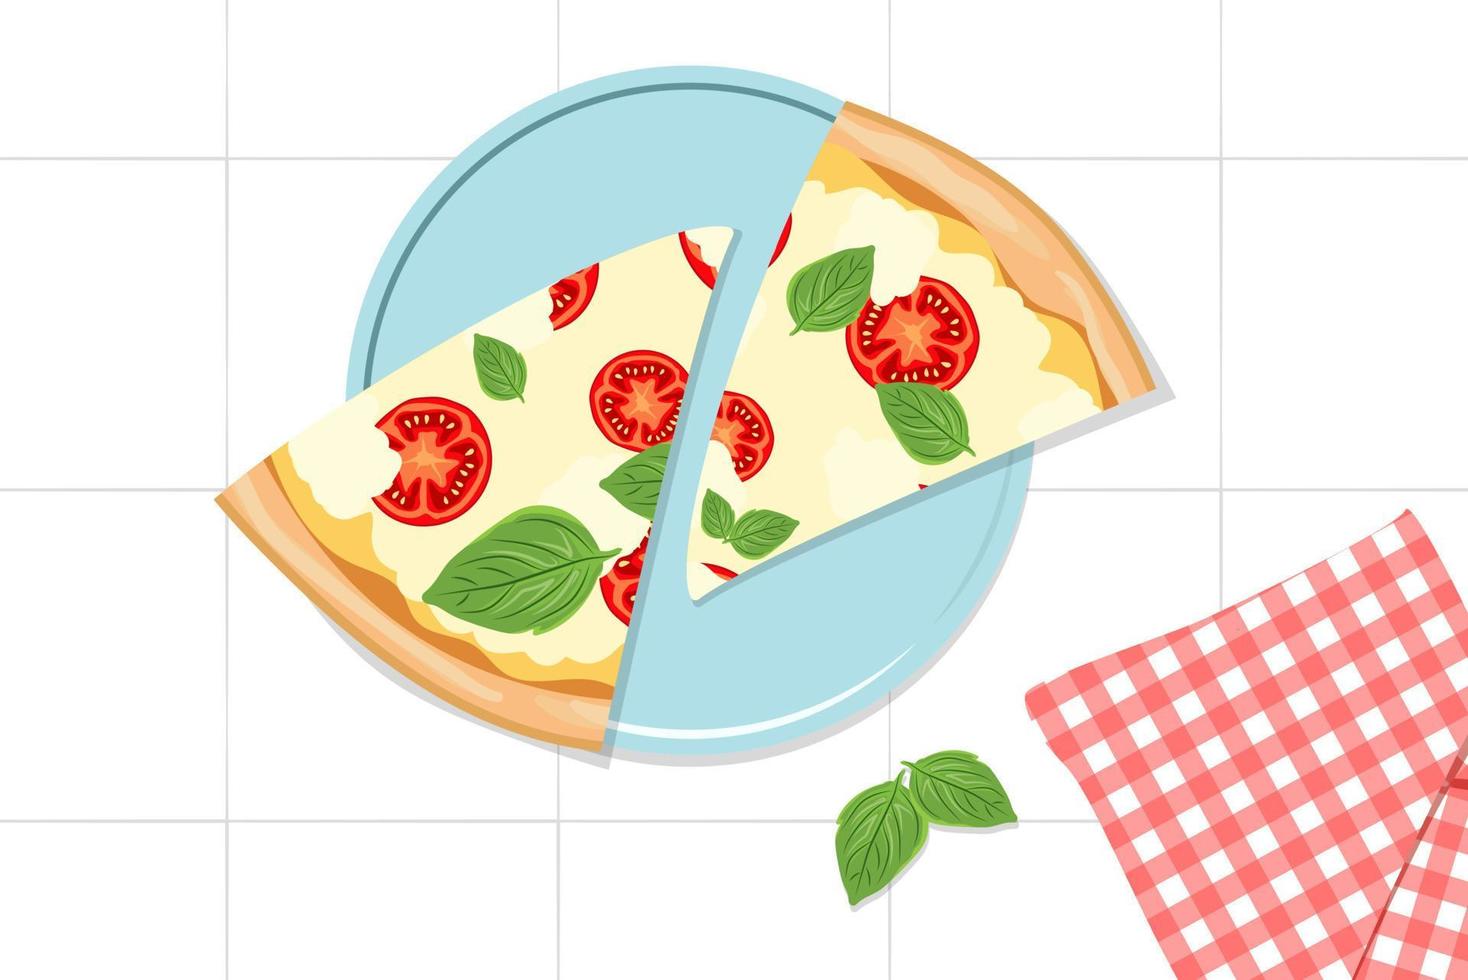 trozos de pizza triangulares. dos rebanadas de pizza margarita en un plato azul y una servilleta roja a cuadros. cocina italiana. estufa. Tomando bocadillos de comida rápida italiana tradicional. ilustración vectorial plana vector